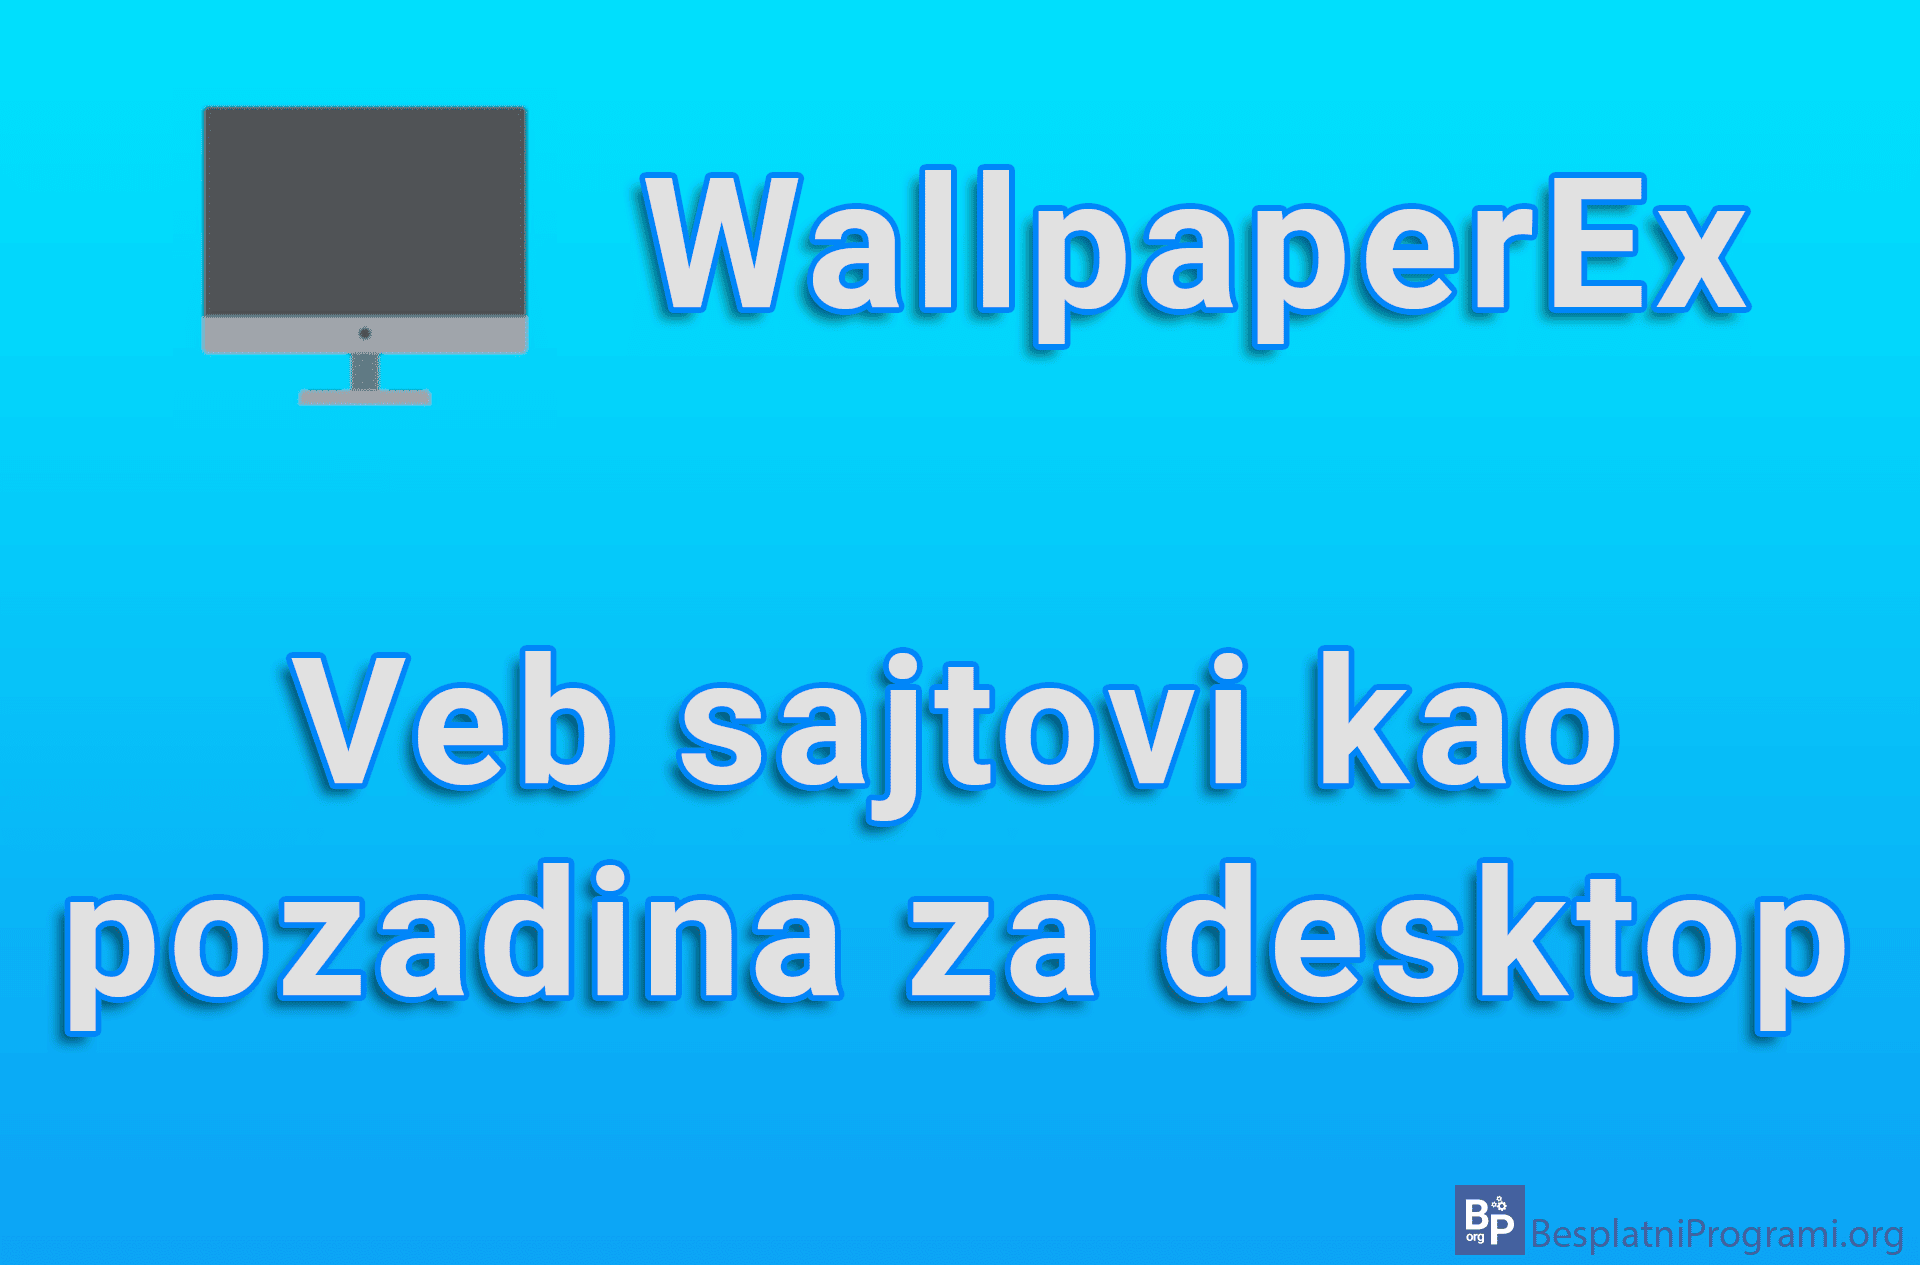 WallpaperEx – Veb sajtovi kao pozadina za desktop